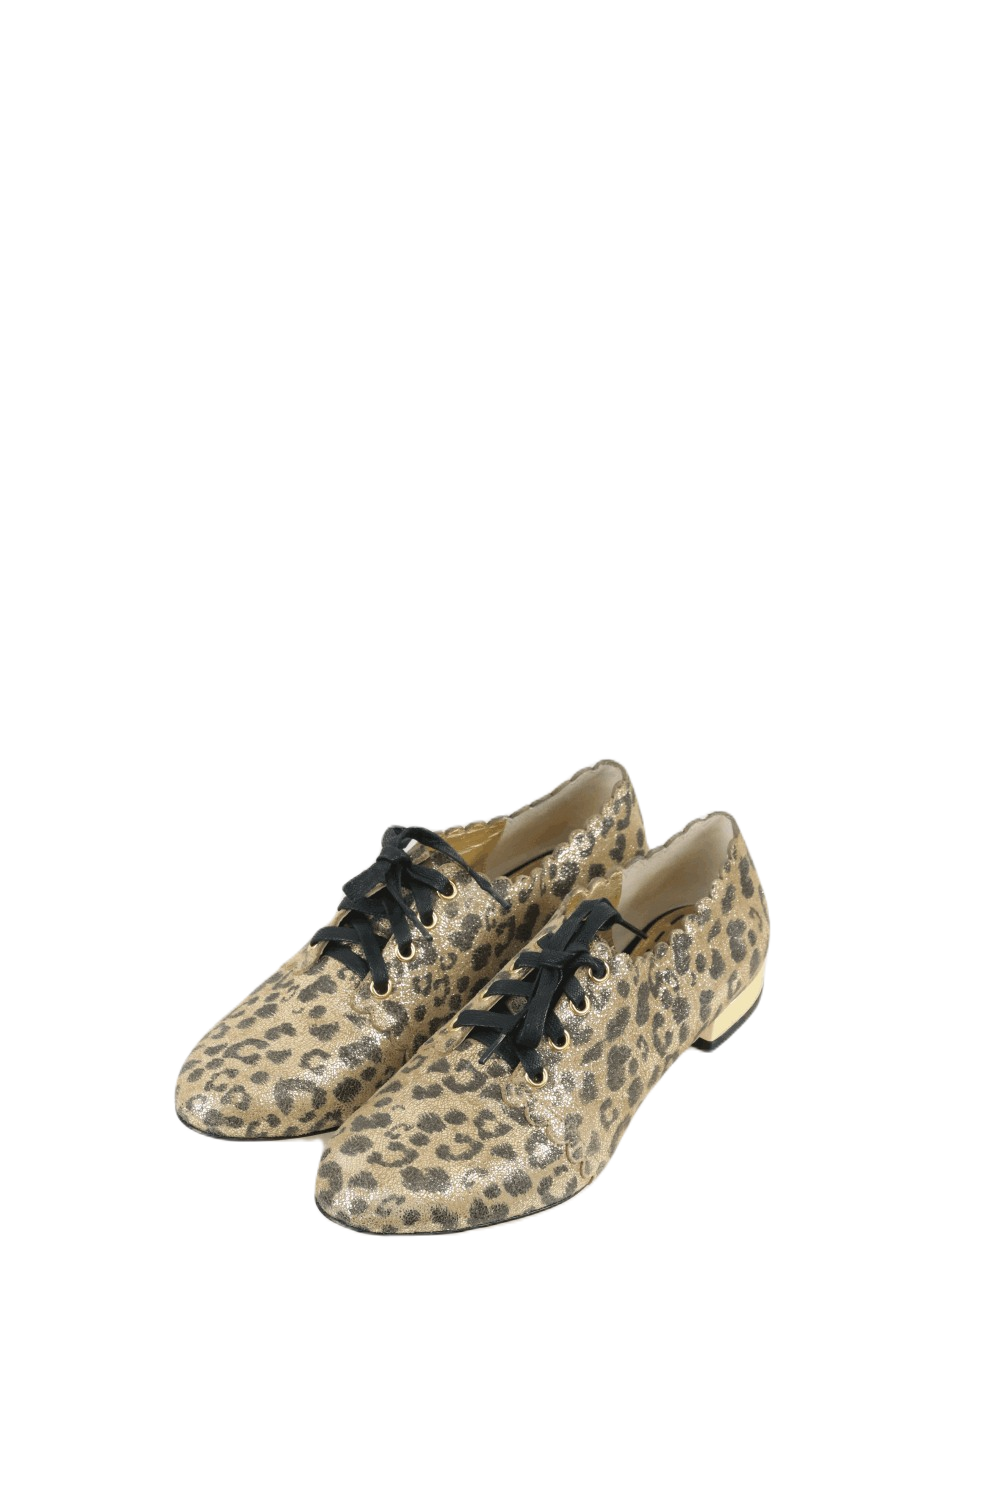 Mimco Leopard Print Shoes 37